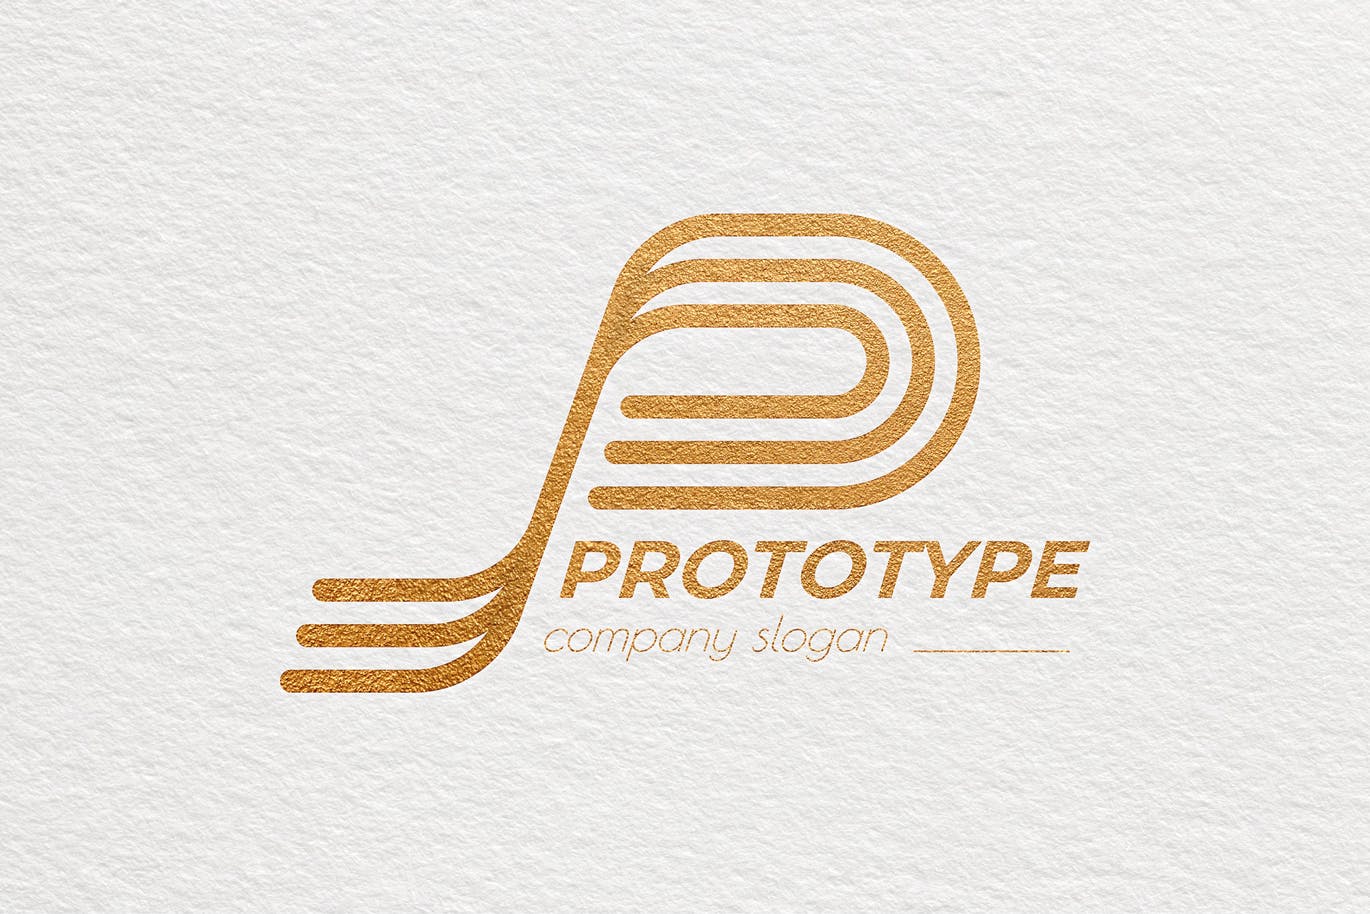 原型设计主题创意图形Logo设计素材库精选模板 Prototype Creative Logo Template插图(3)